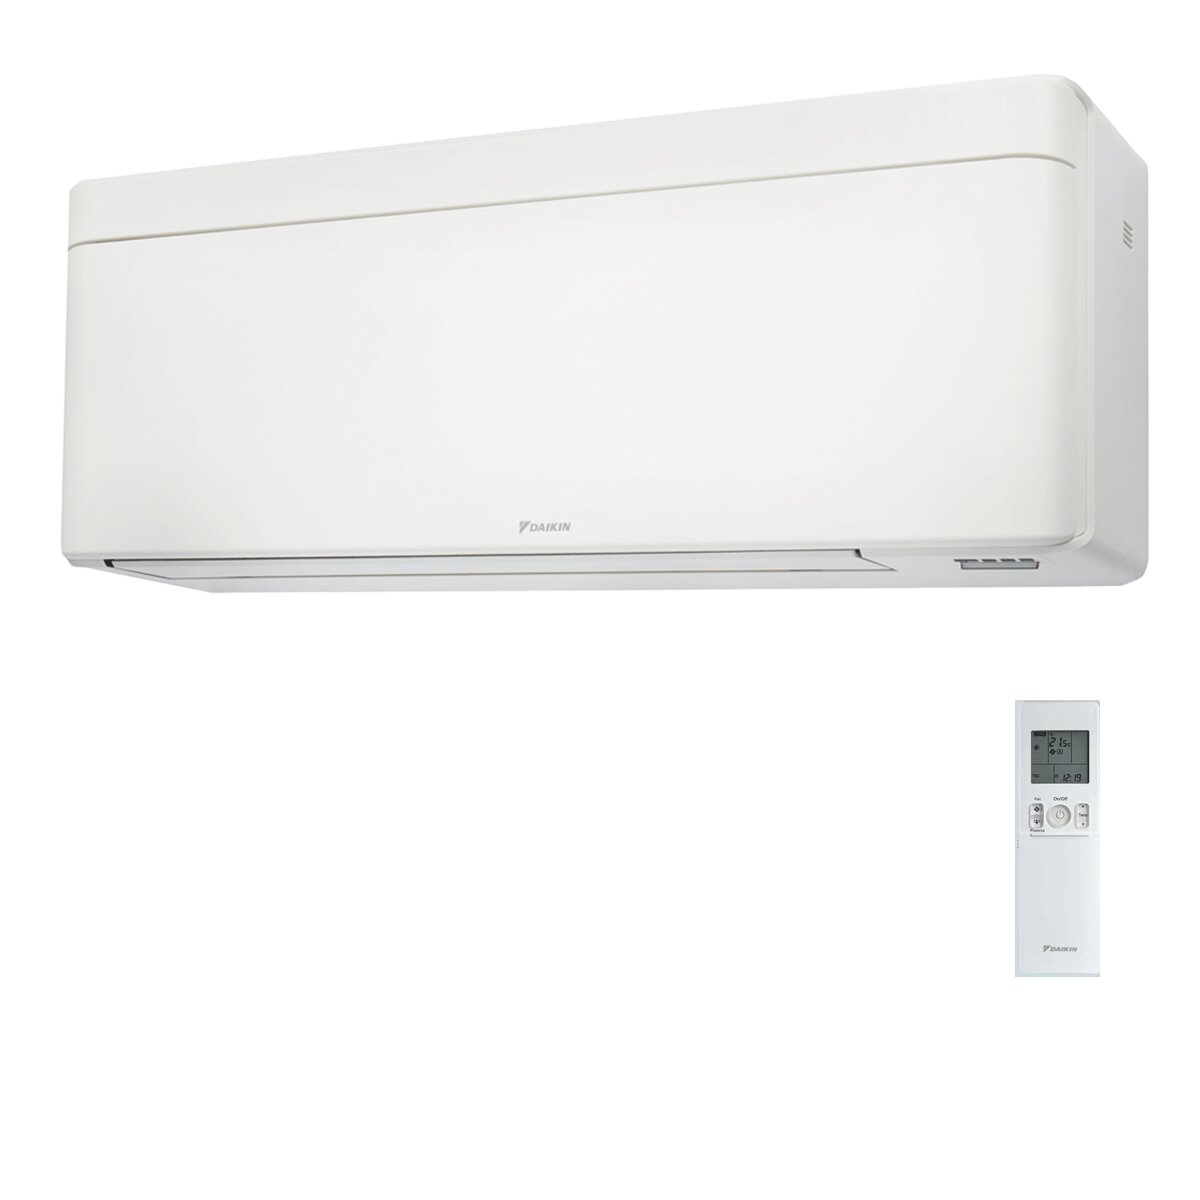 Daikin Stylish Air Conditioner White 15000 BTU Inverter A++ WiFi R32